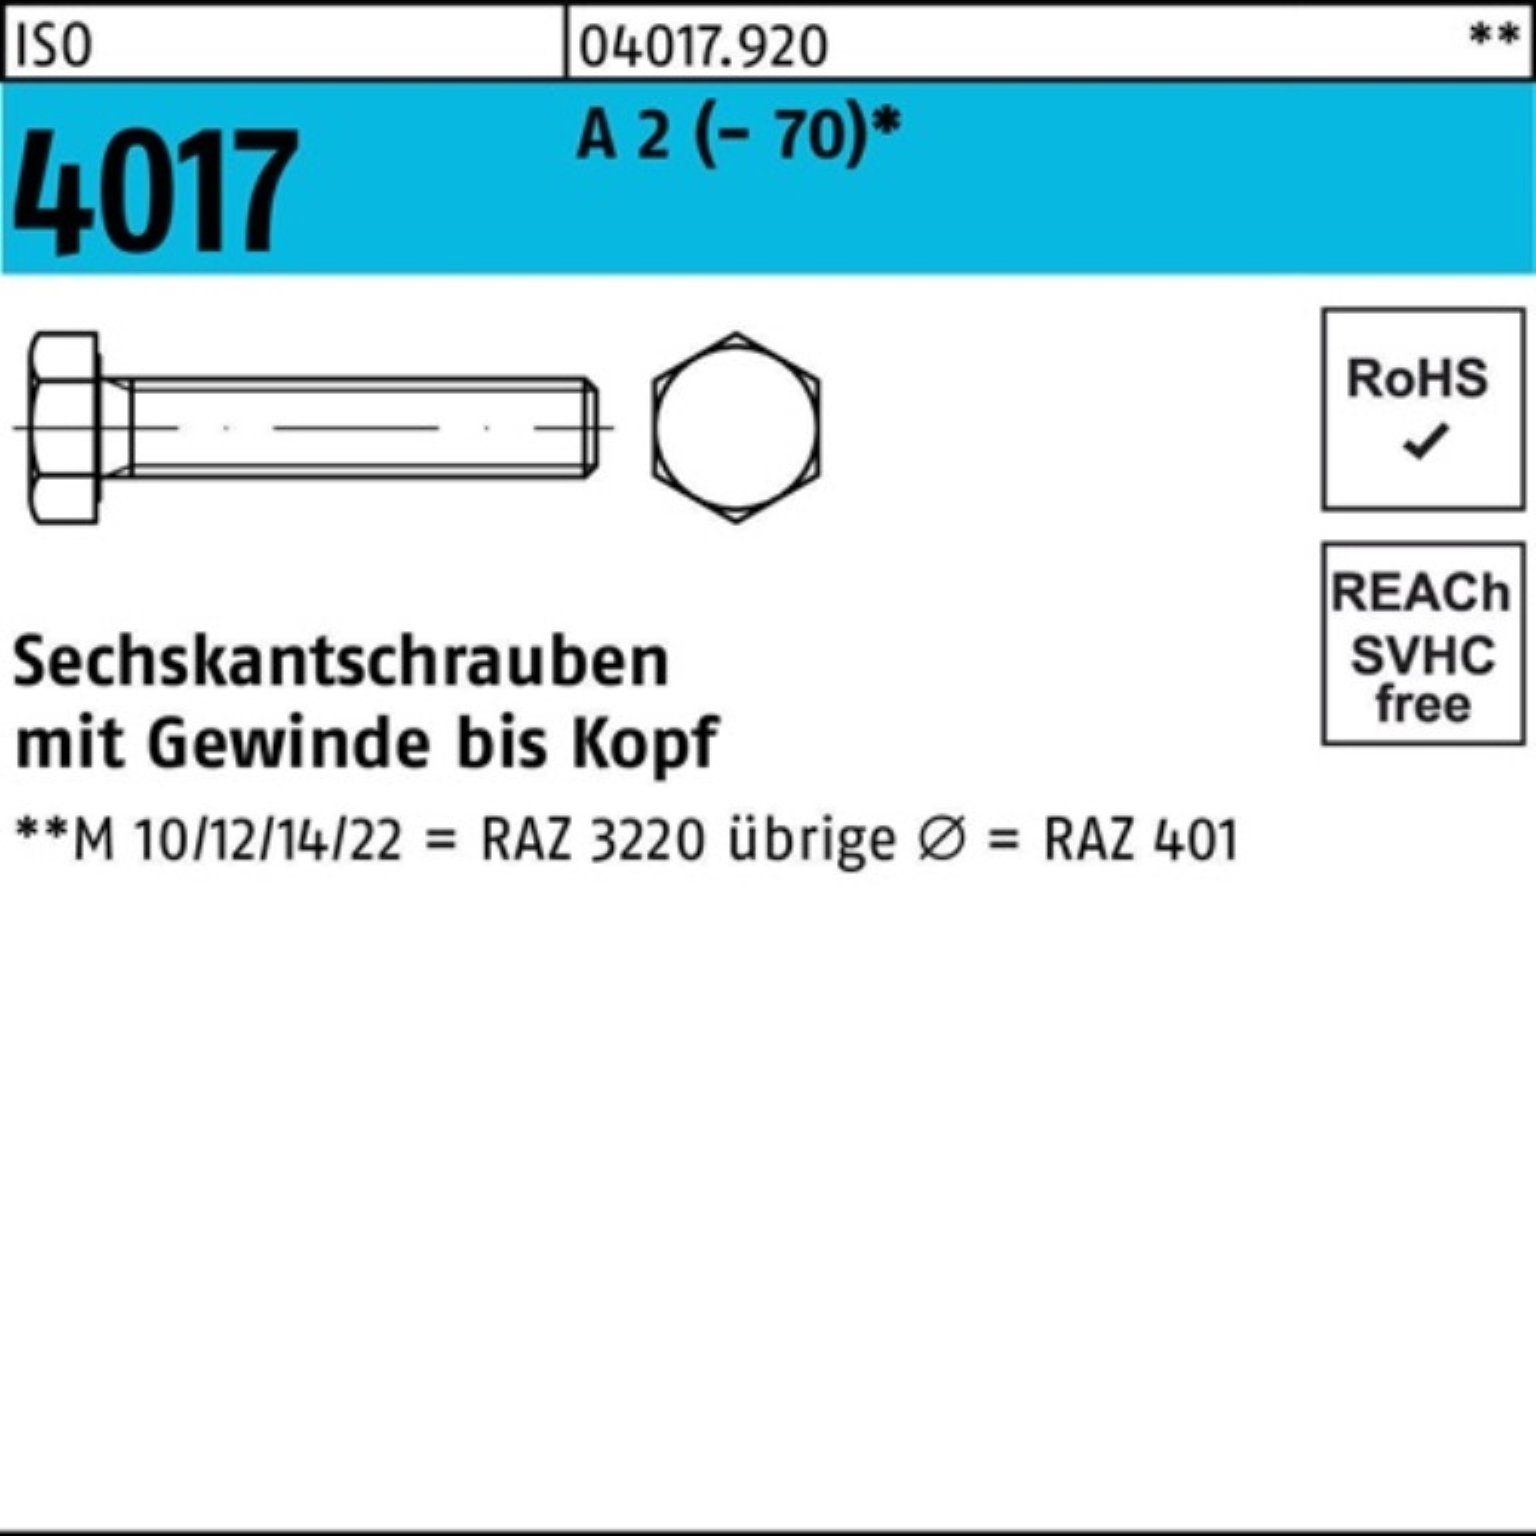 Bufab Sechskantschraube 100er Pack Sechskantschraube ISO 4017 VG M10x 45 A 2 (70) 100 Stück